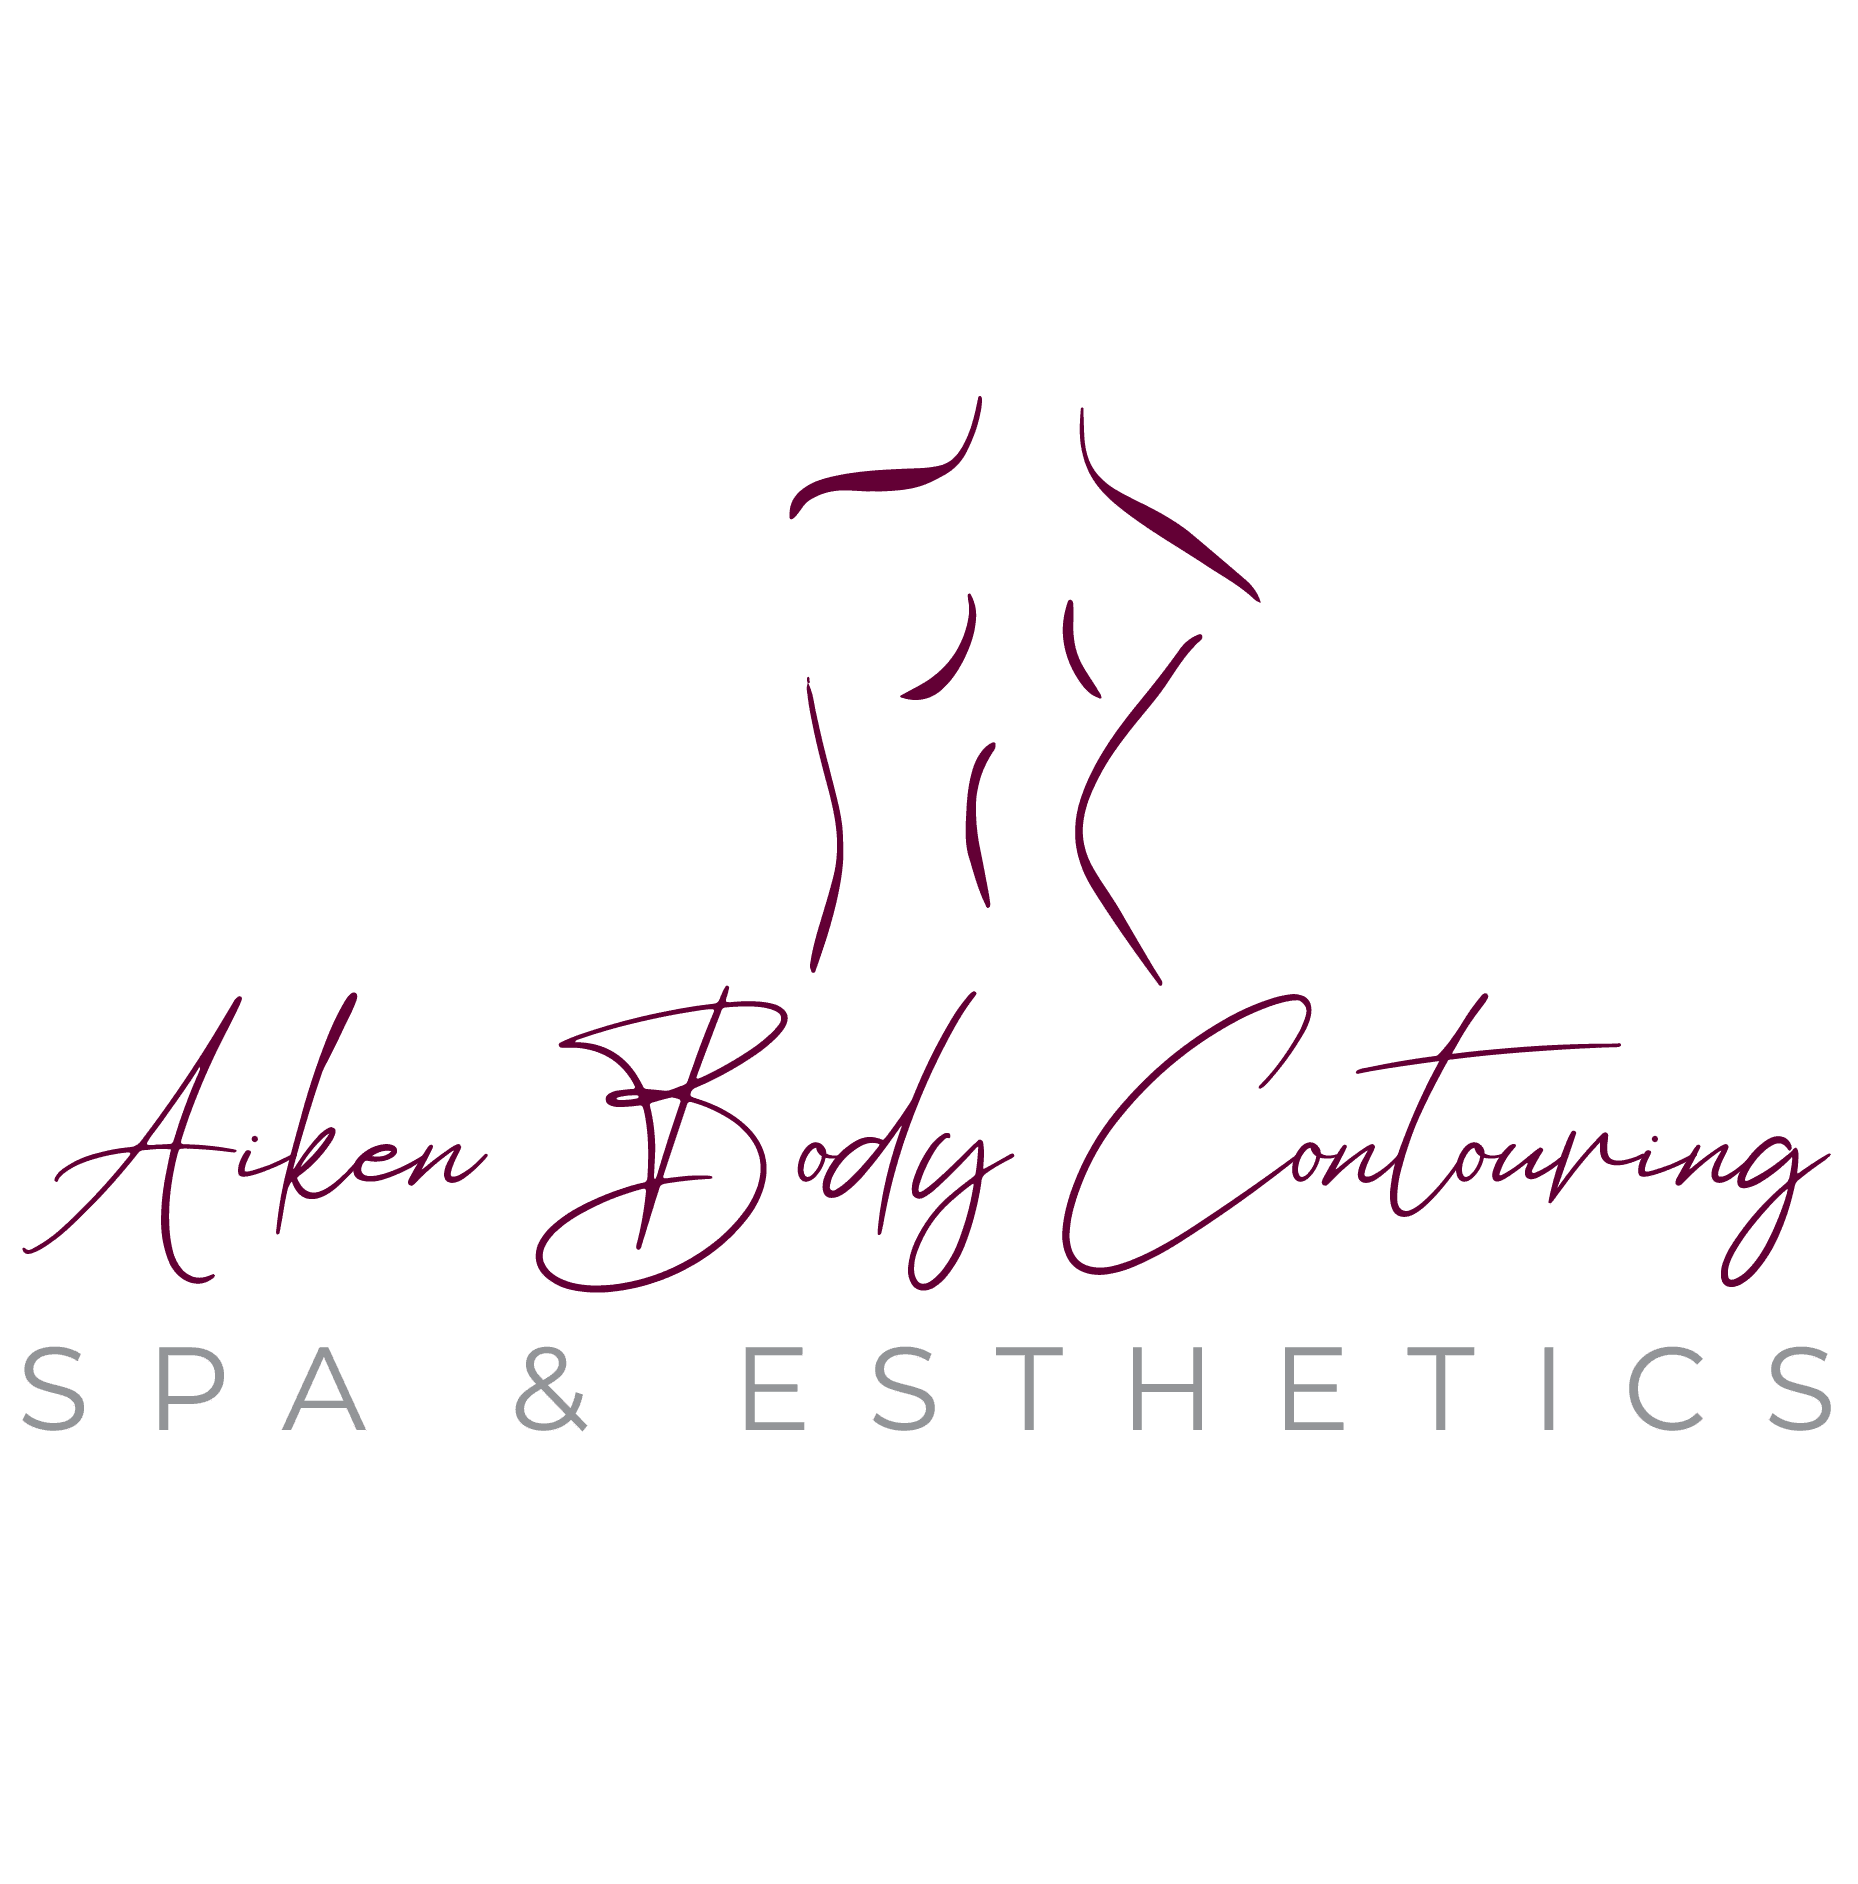 Aiken Body Contouring Spa & Esthetics